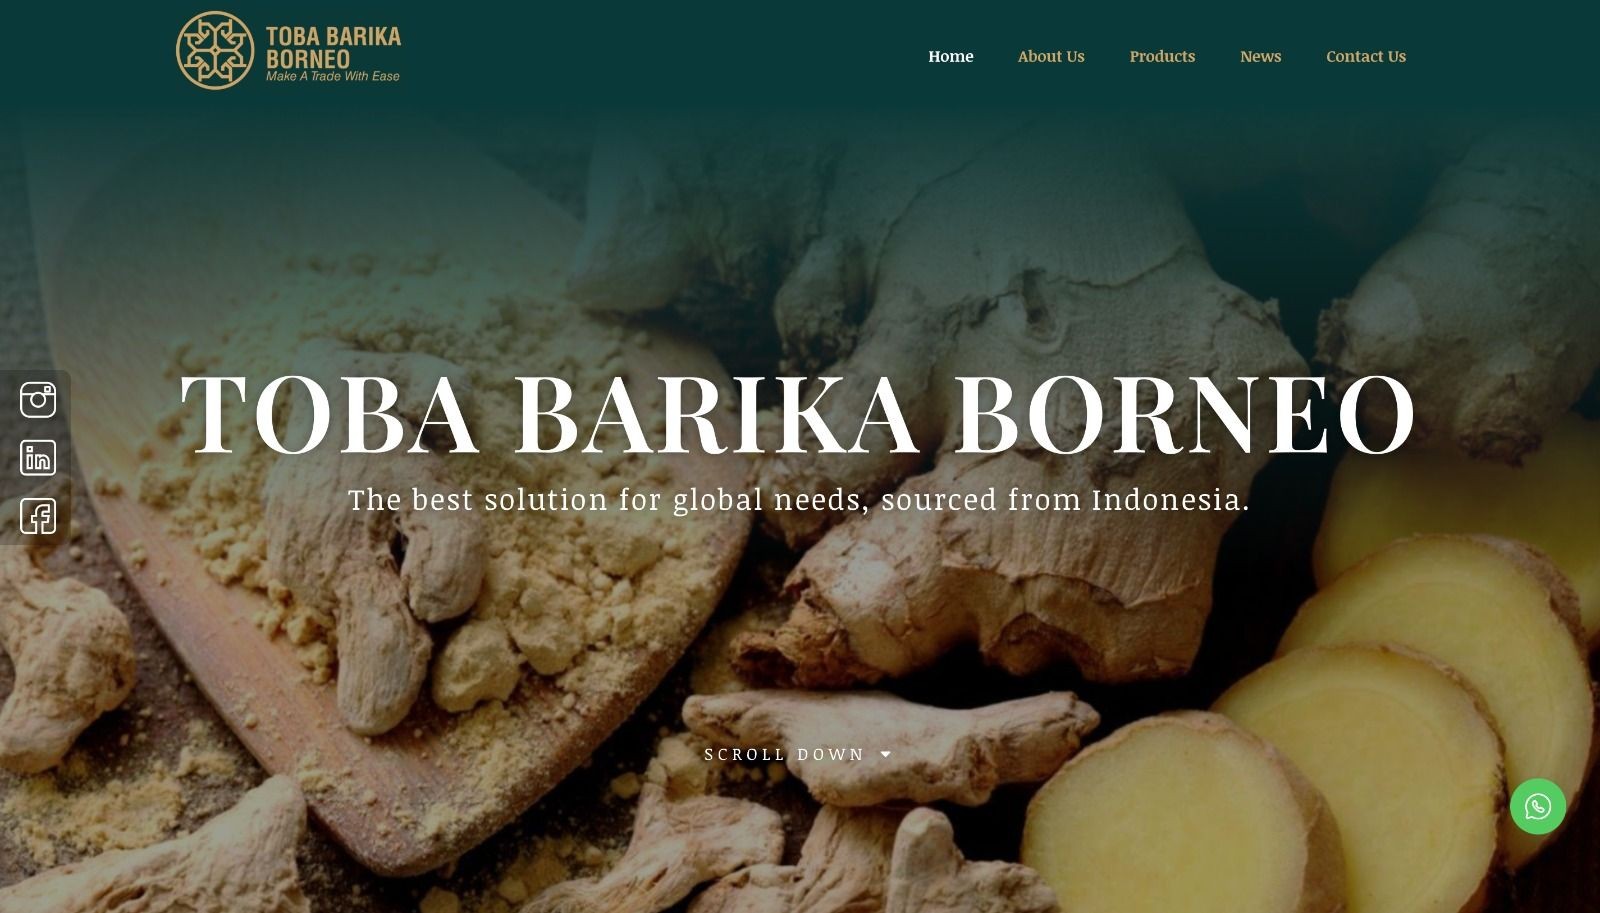 PT. Toba Barika Borneo